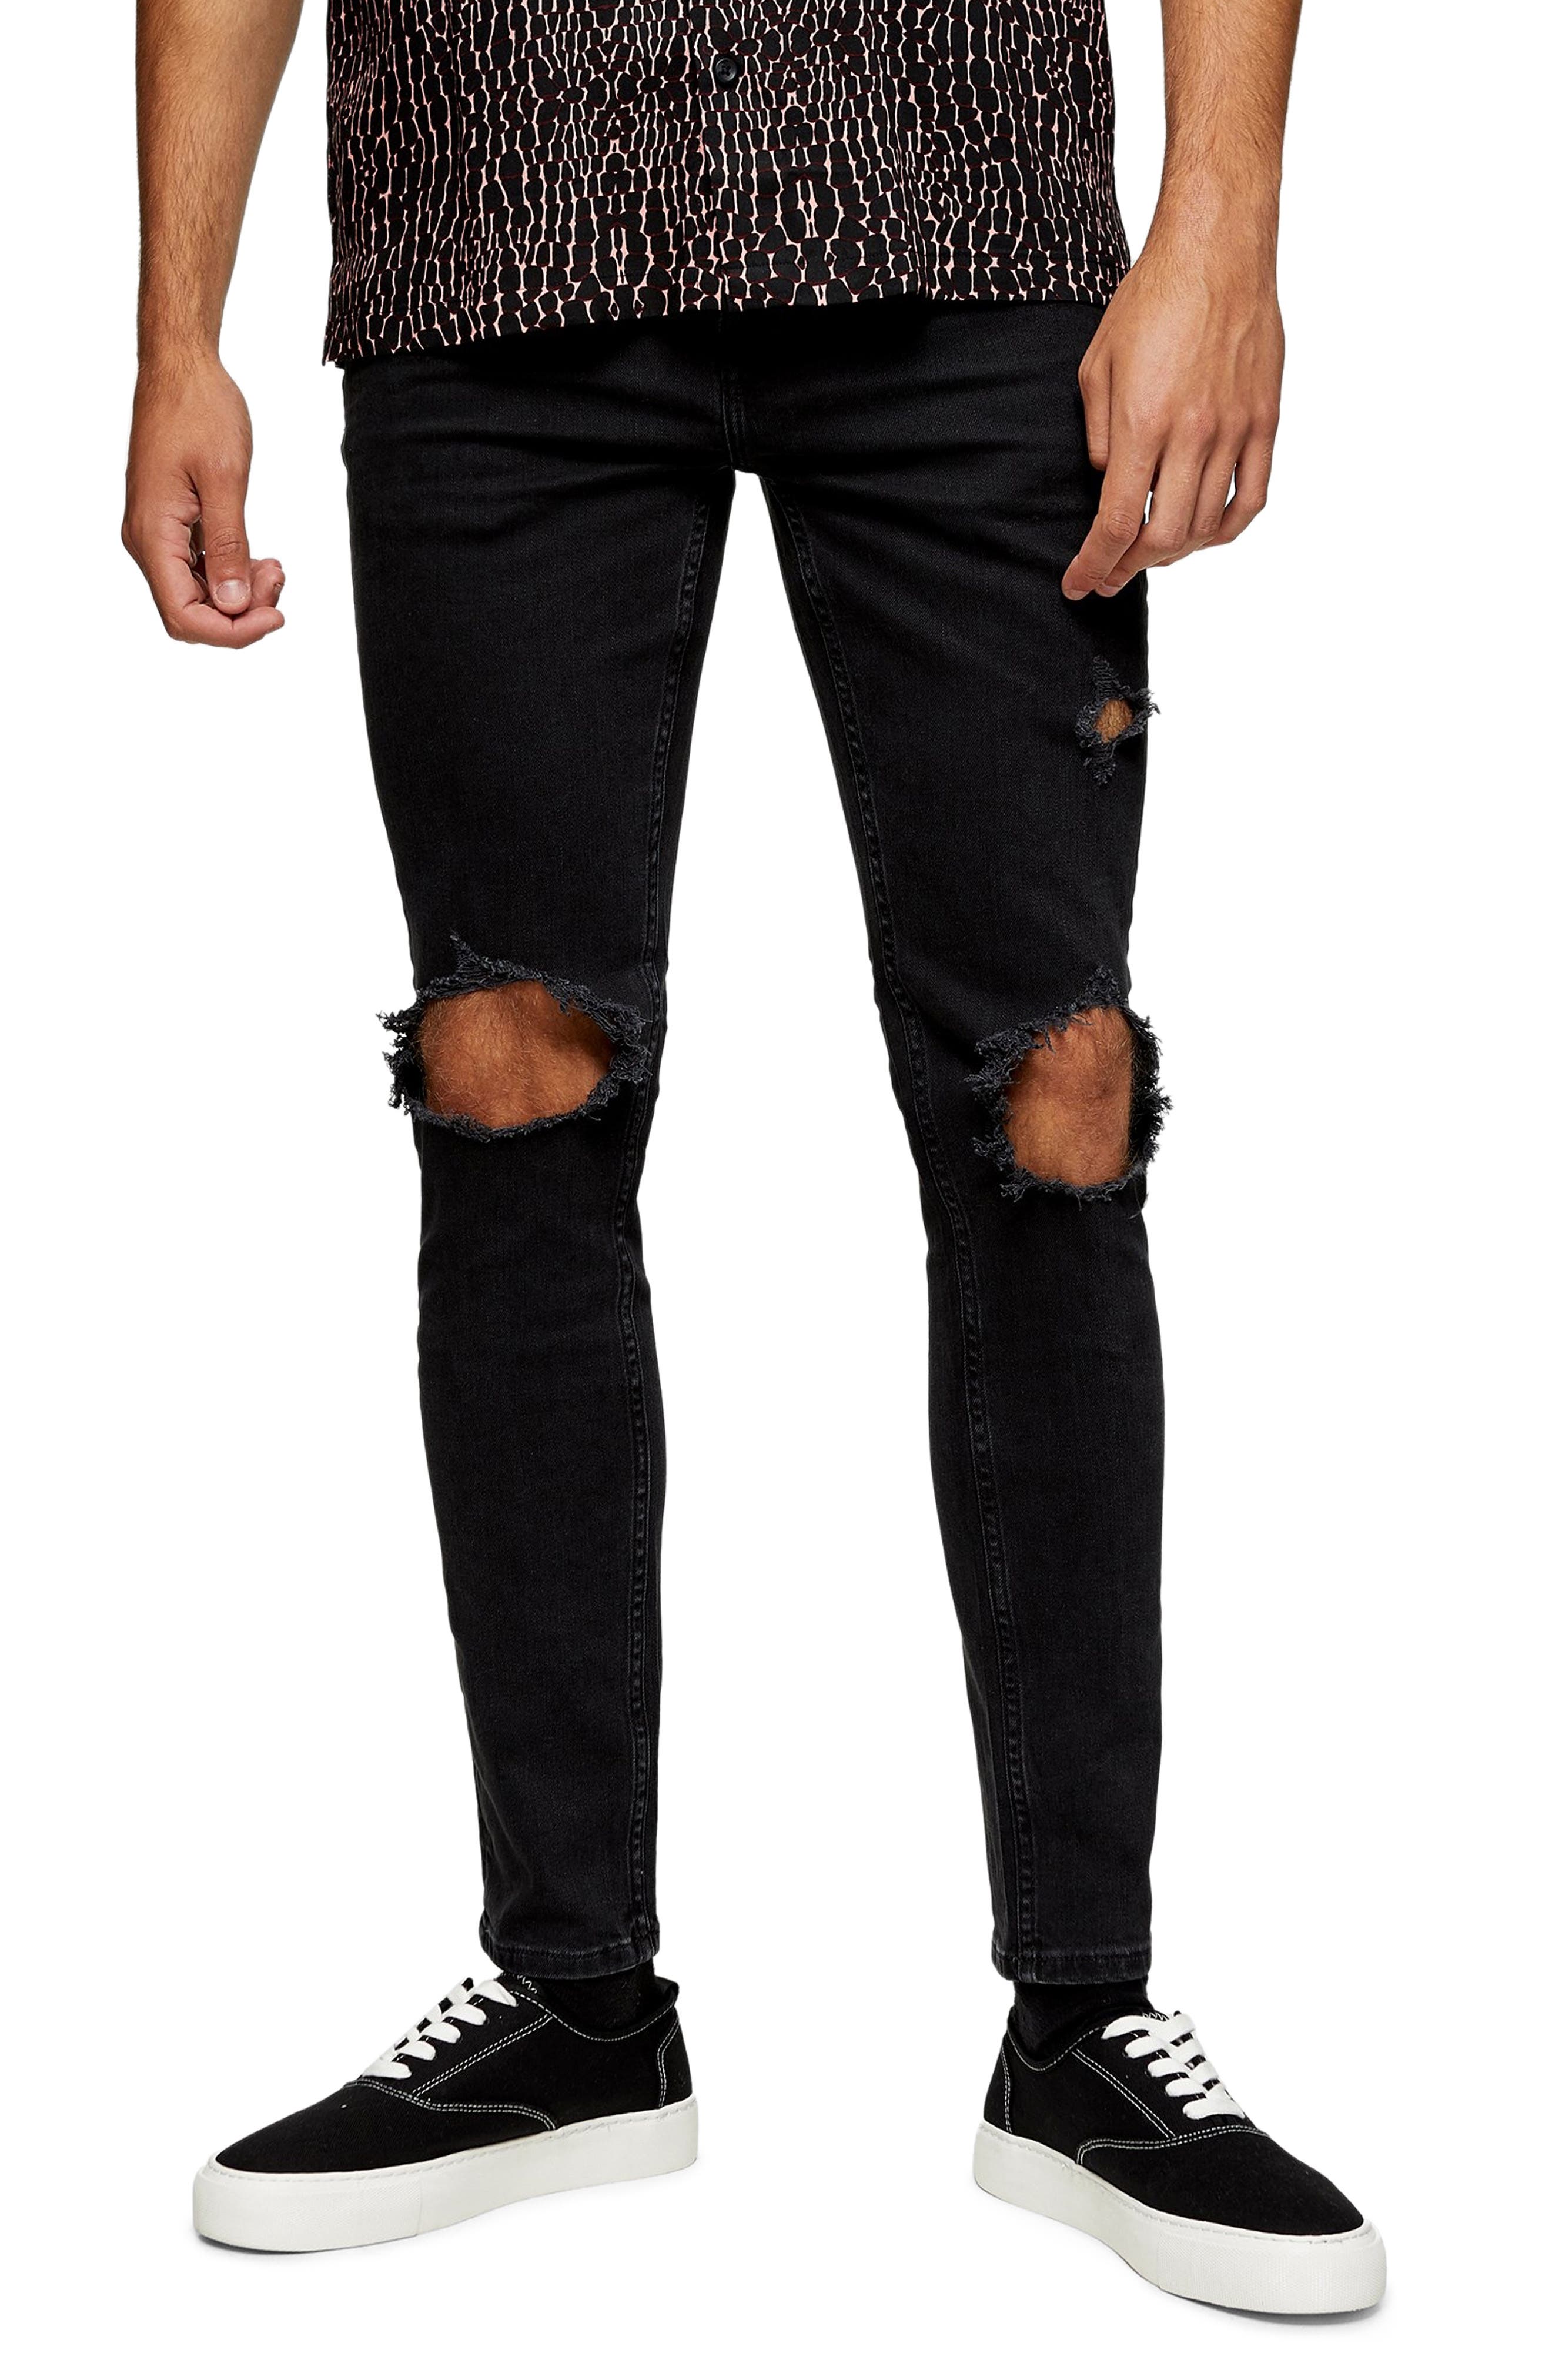 nordstrom black jeans